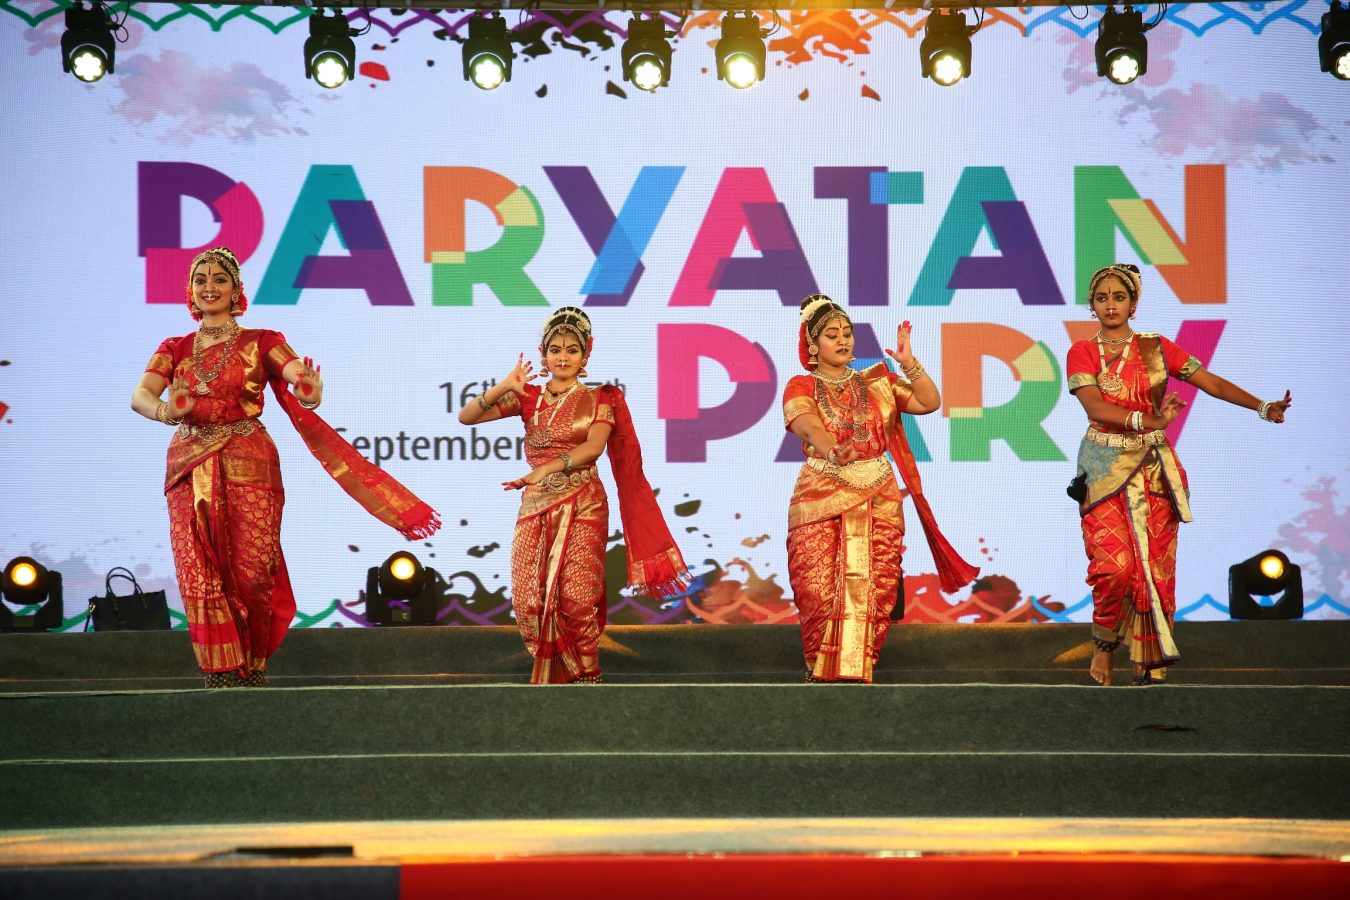 Paryatan Parv 2018